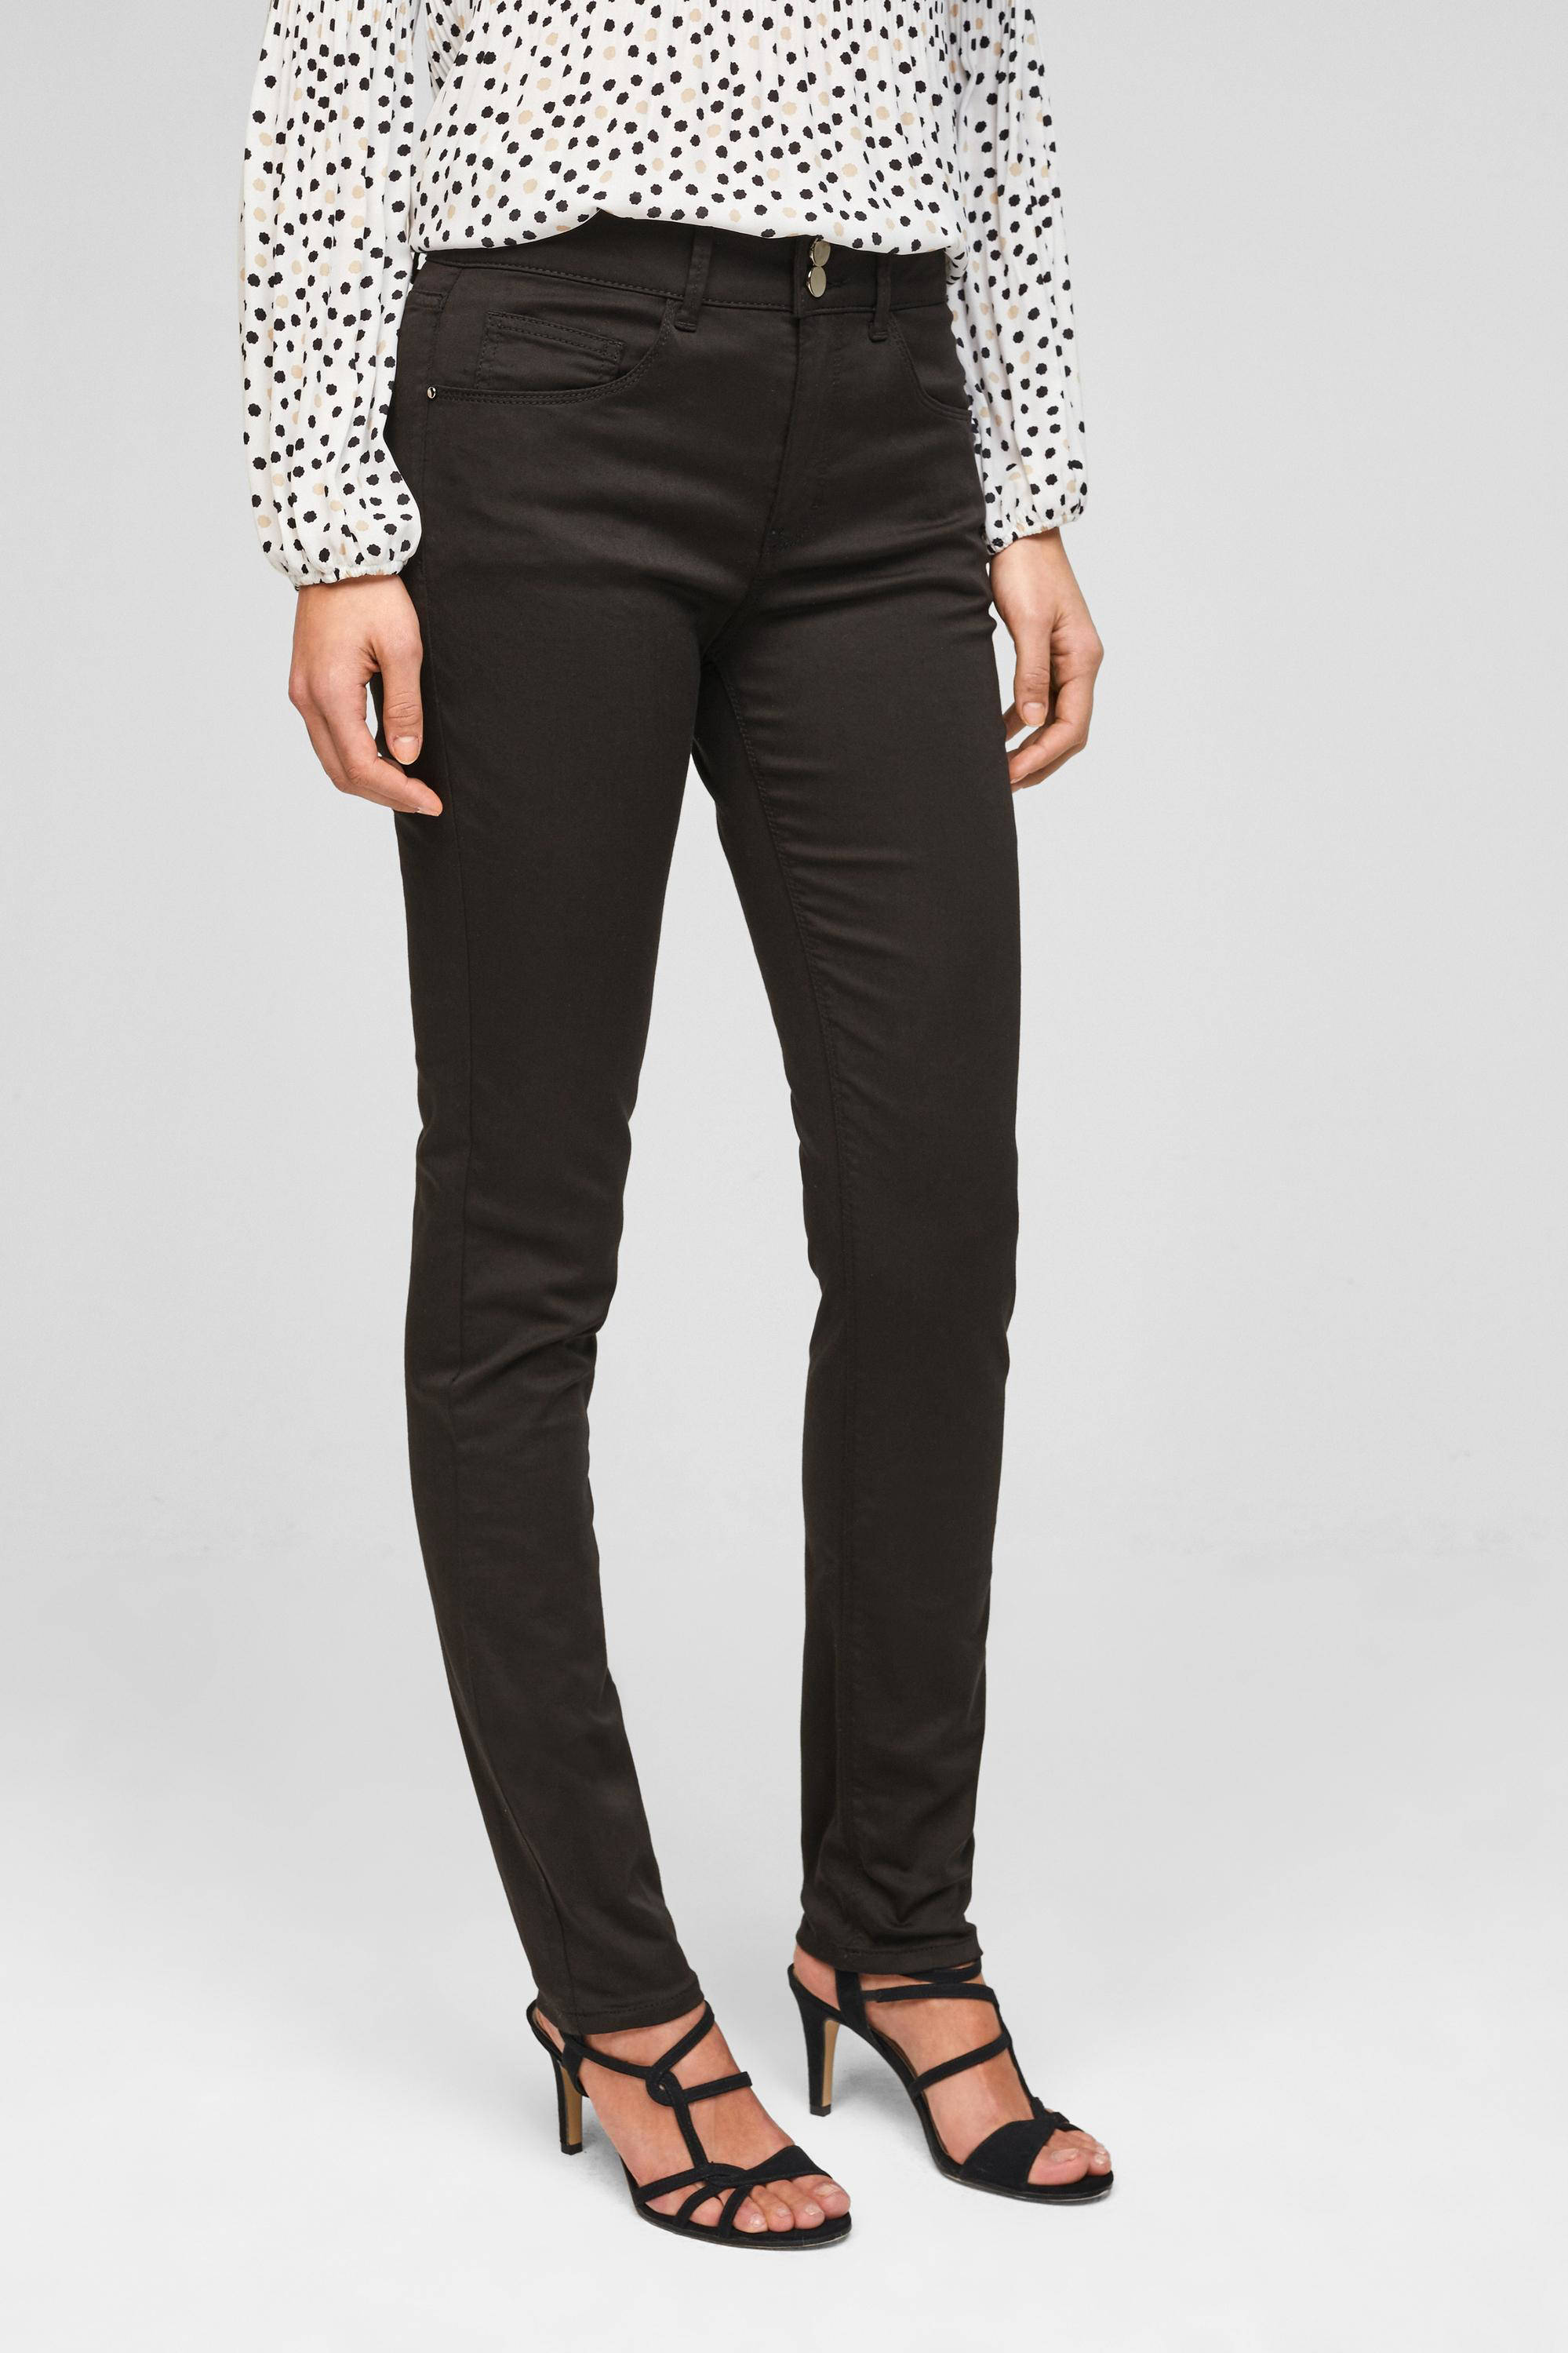 s.Oliver 7\/8-broek zwart casual uitstraling Mode Broeken 7/8-broeken 